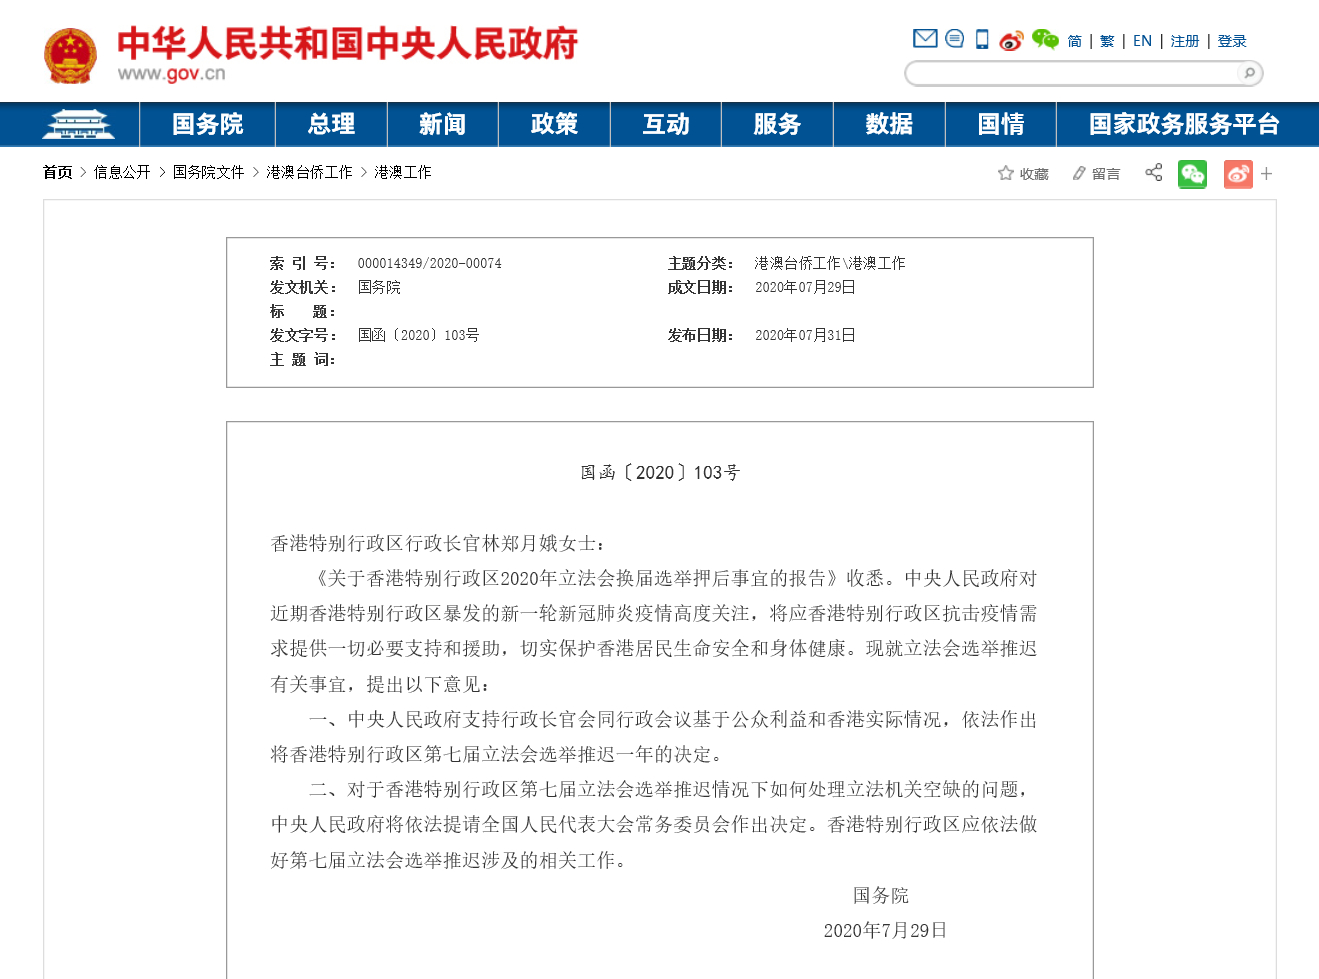 中央人民政府就香港特别行政区第七届立法会选举推迟有关事宜表明意见